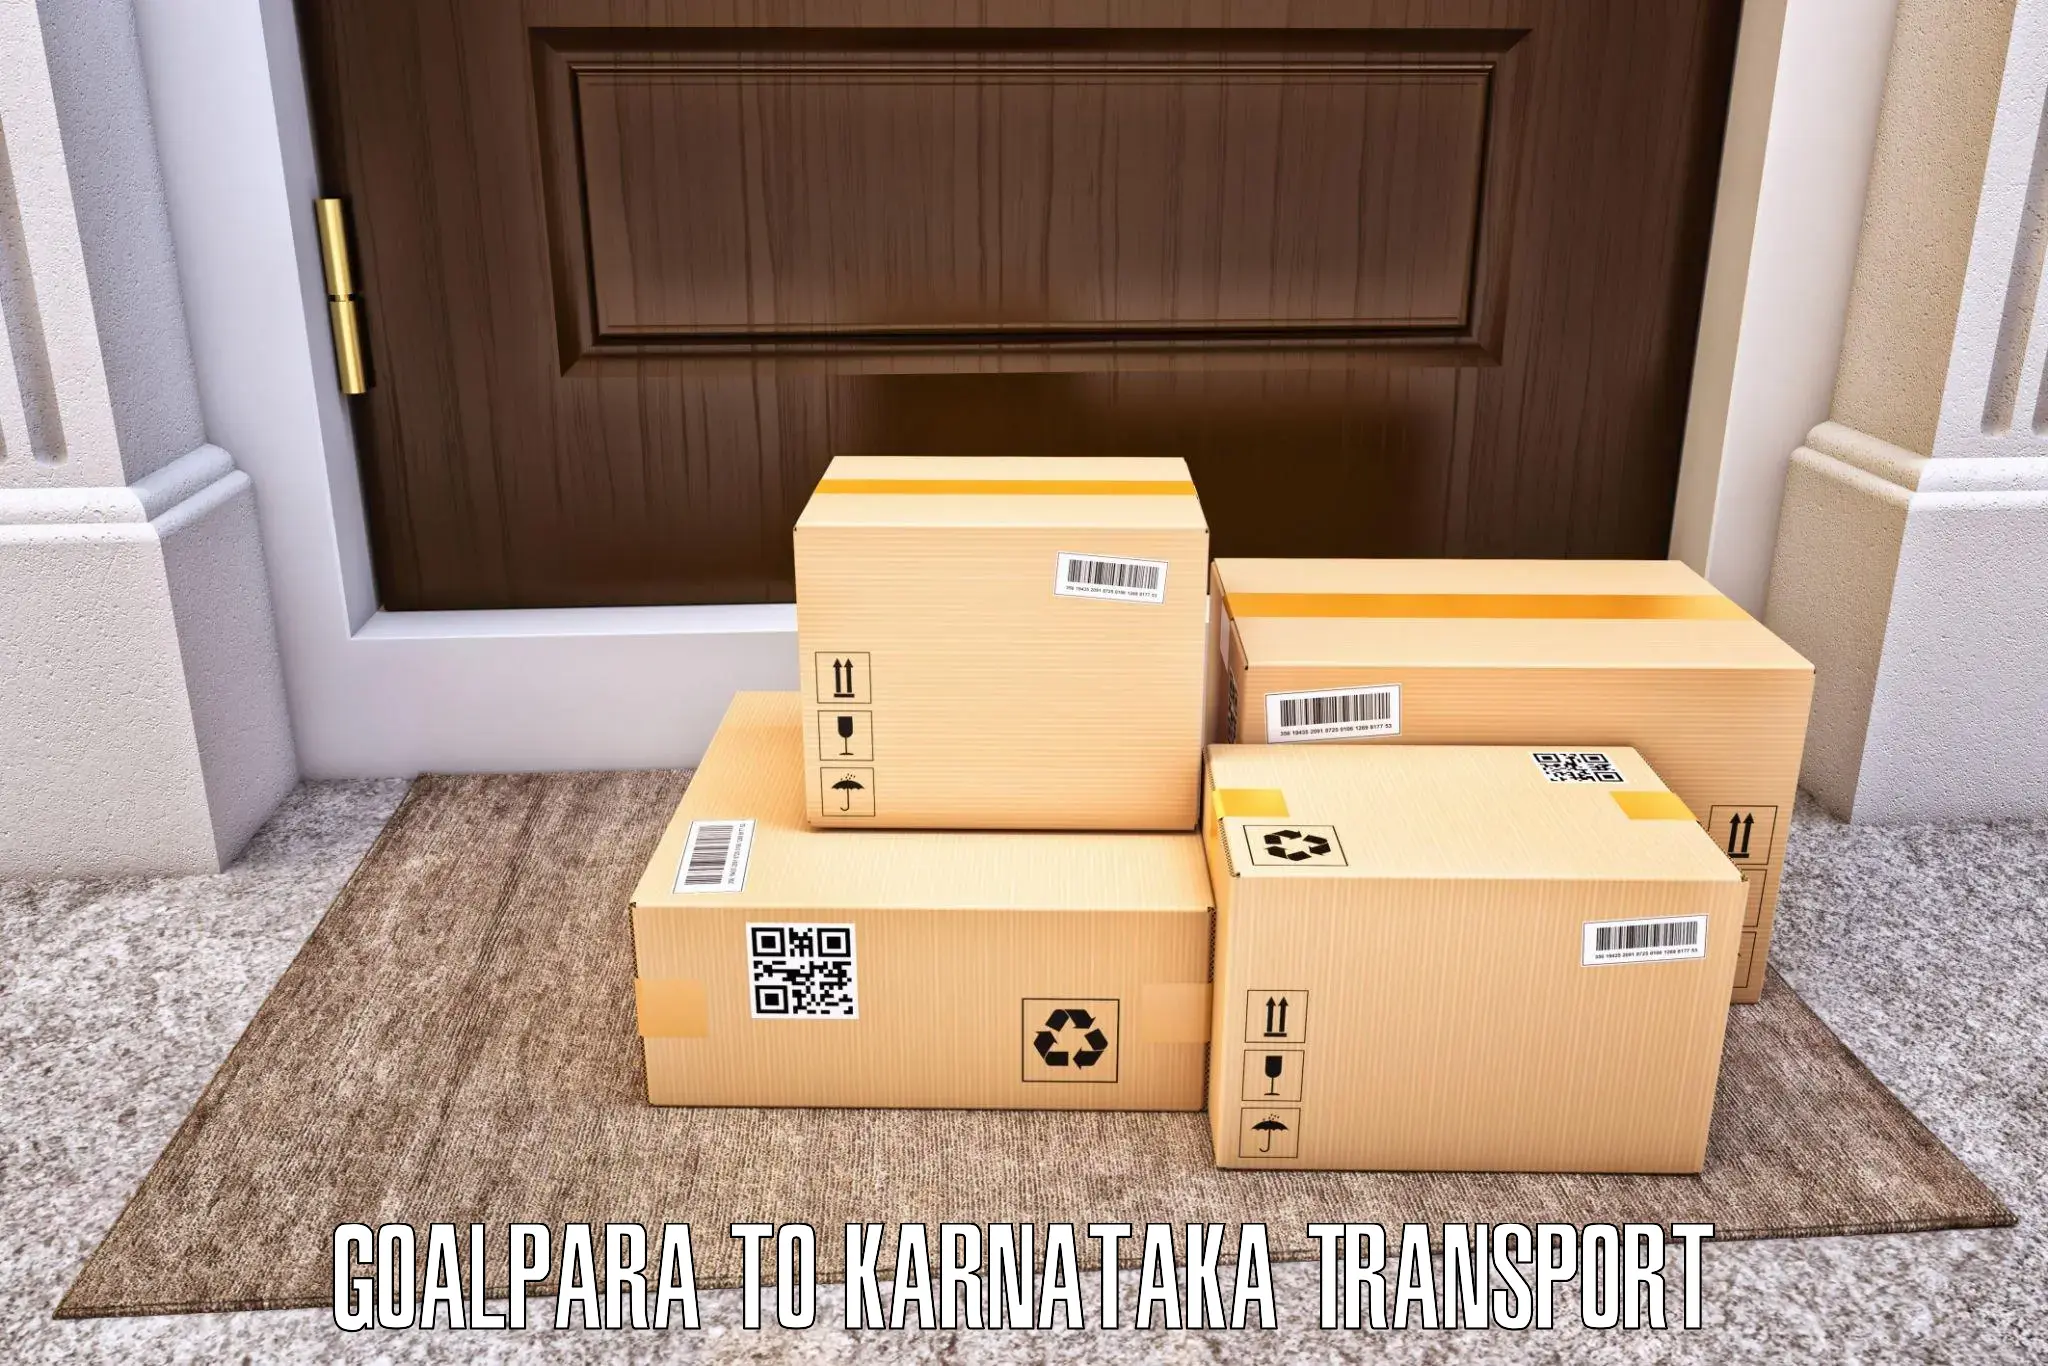 Daily transport service Goalpara to Khanapur Karnataka